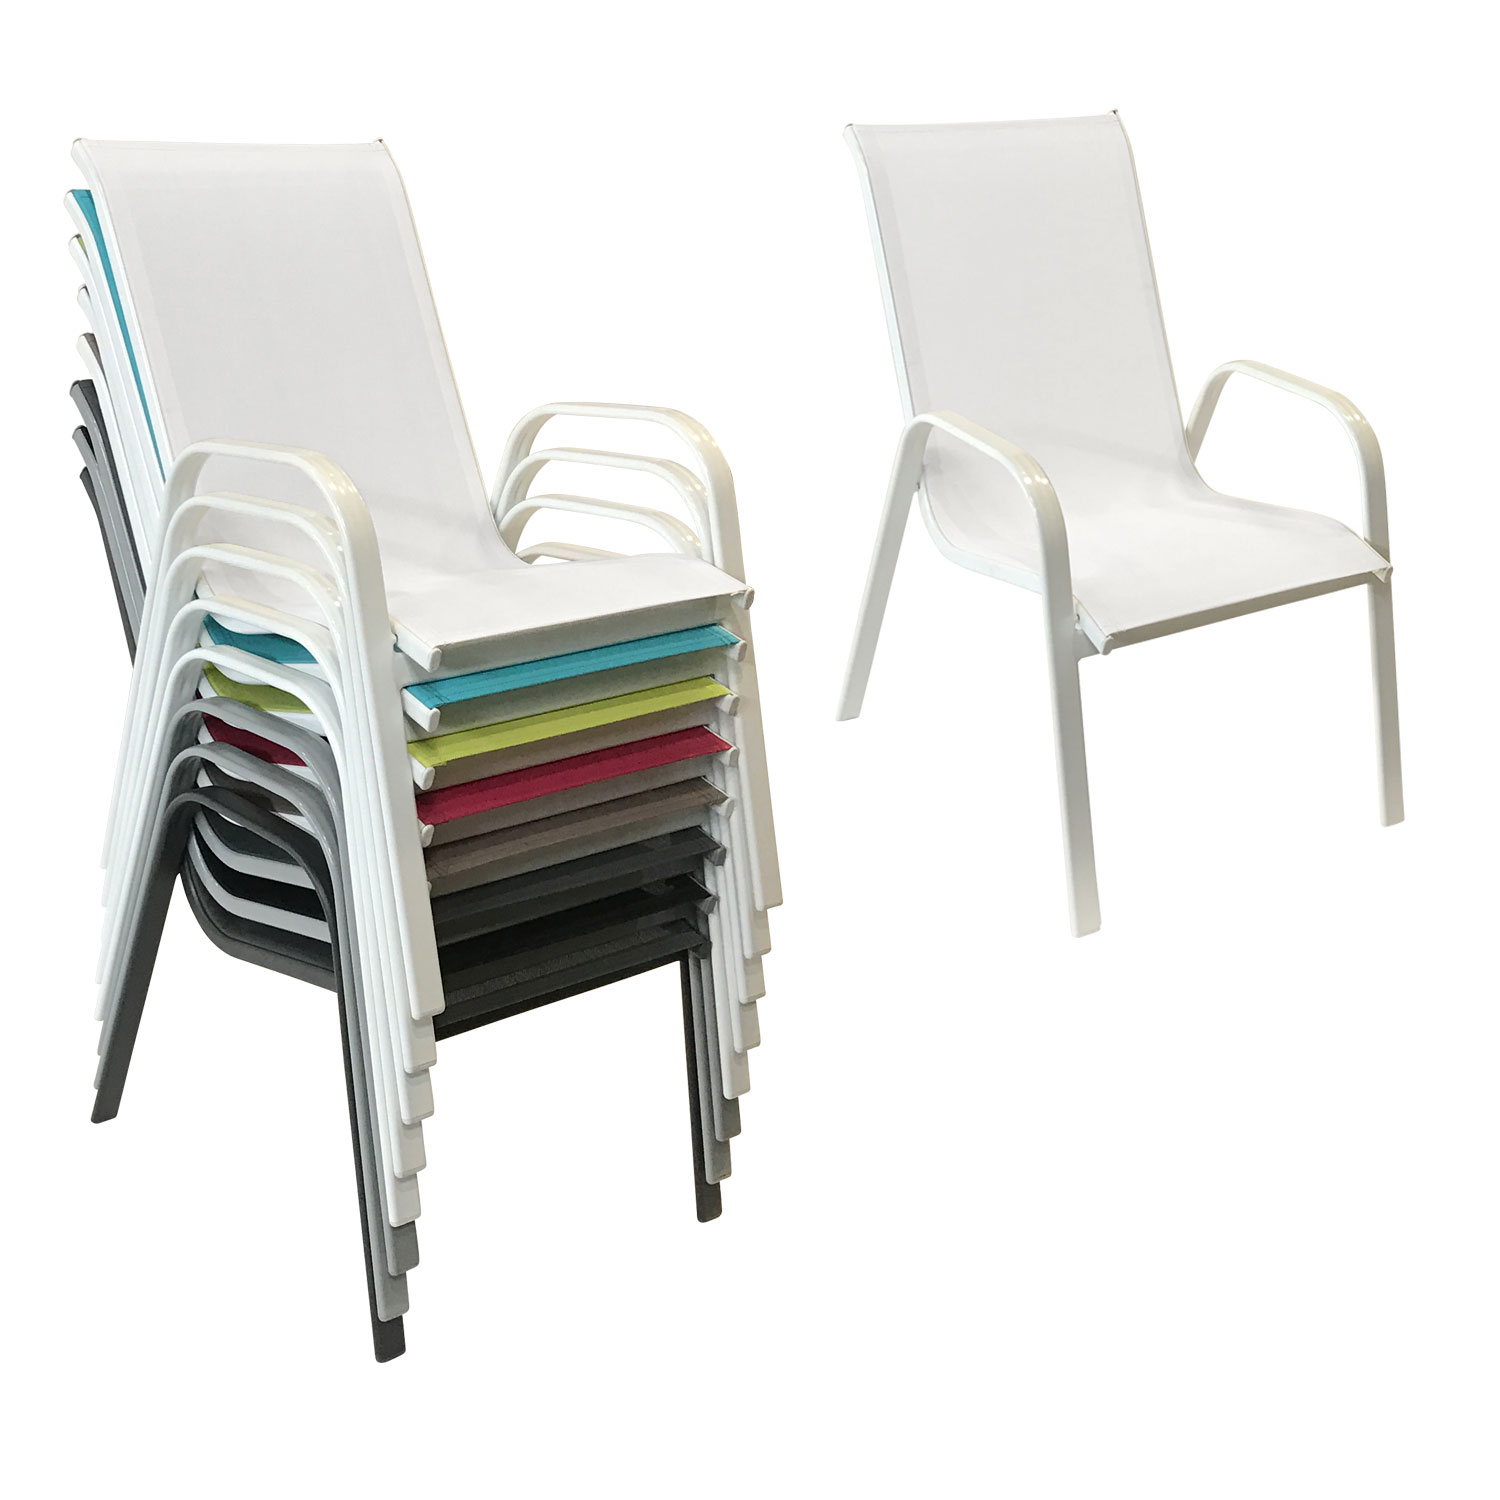 Set di 8 sedie MARBELLA in textilene bianco - alluminio bianco